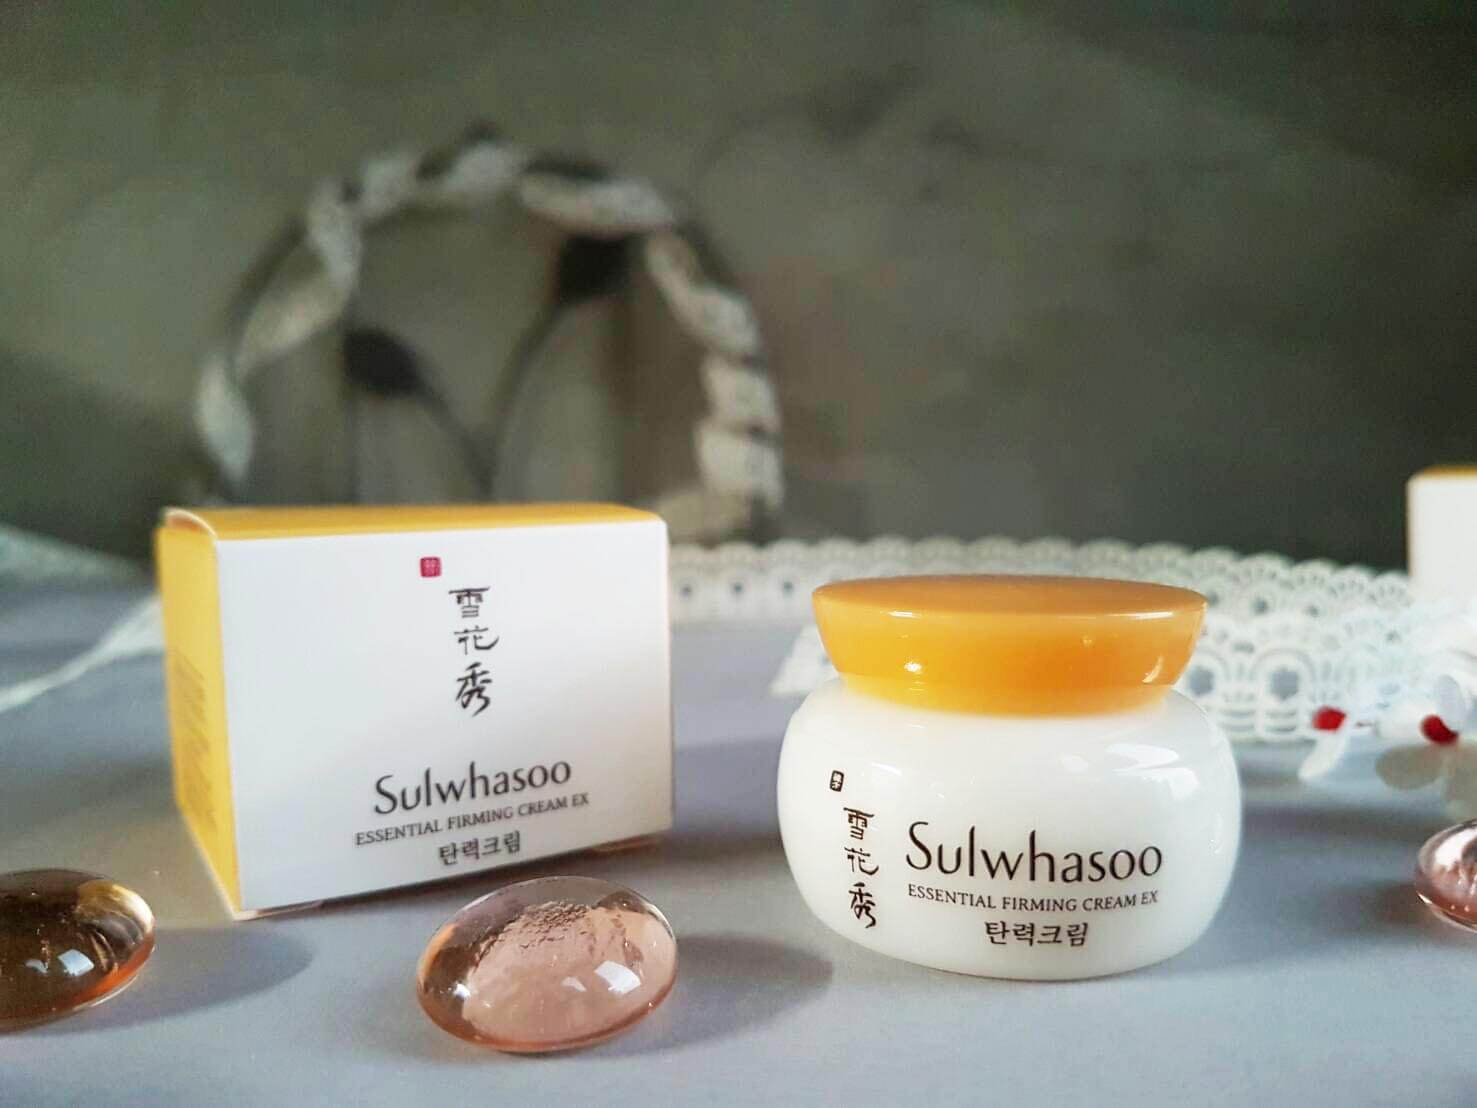 à¸�à¸¥à¸�à¸²à¸£à¸�à¹�à¸�à¸«à¸²à¸£à¸¹à¸�à¸�à¸²à¸�à¸ªà¸³à¸«à¸£à¸±à¸� Sulwhasoo Essential Firming Cream EX 5ml